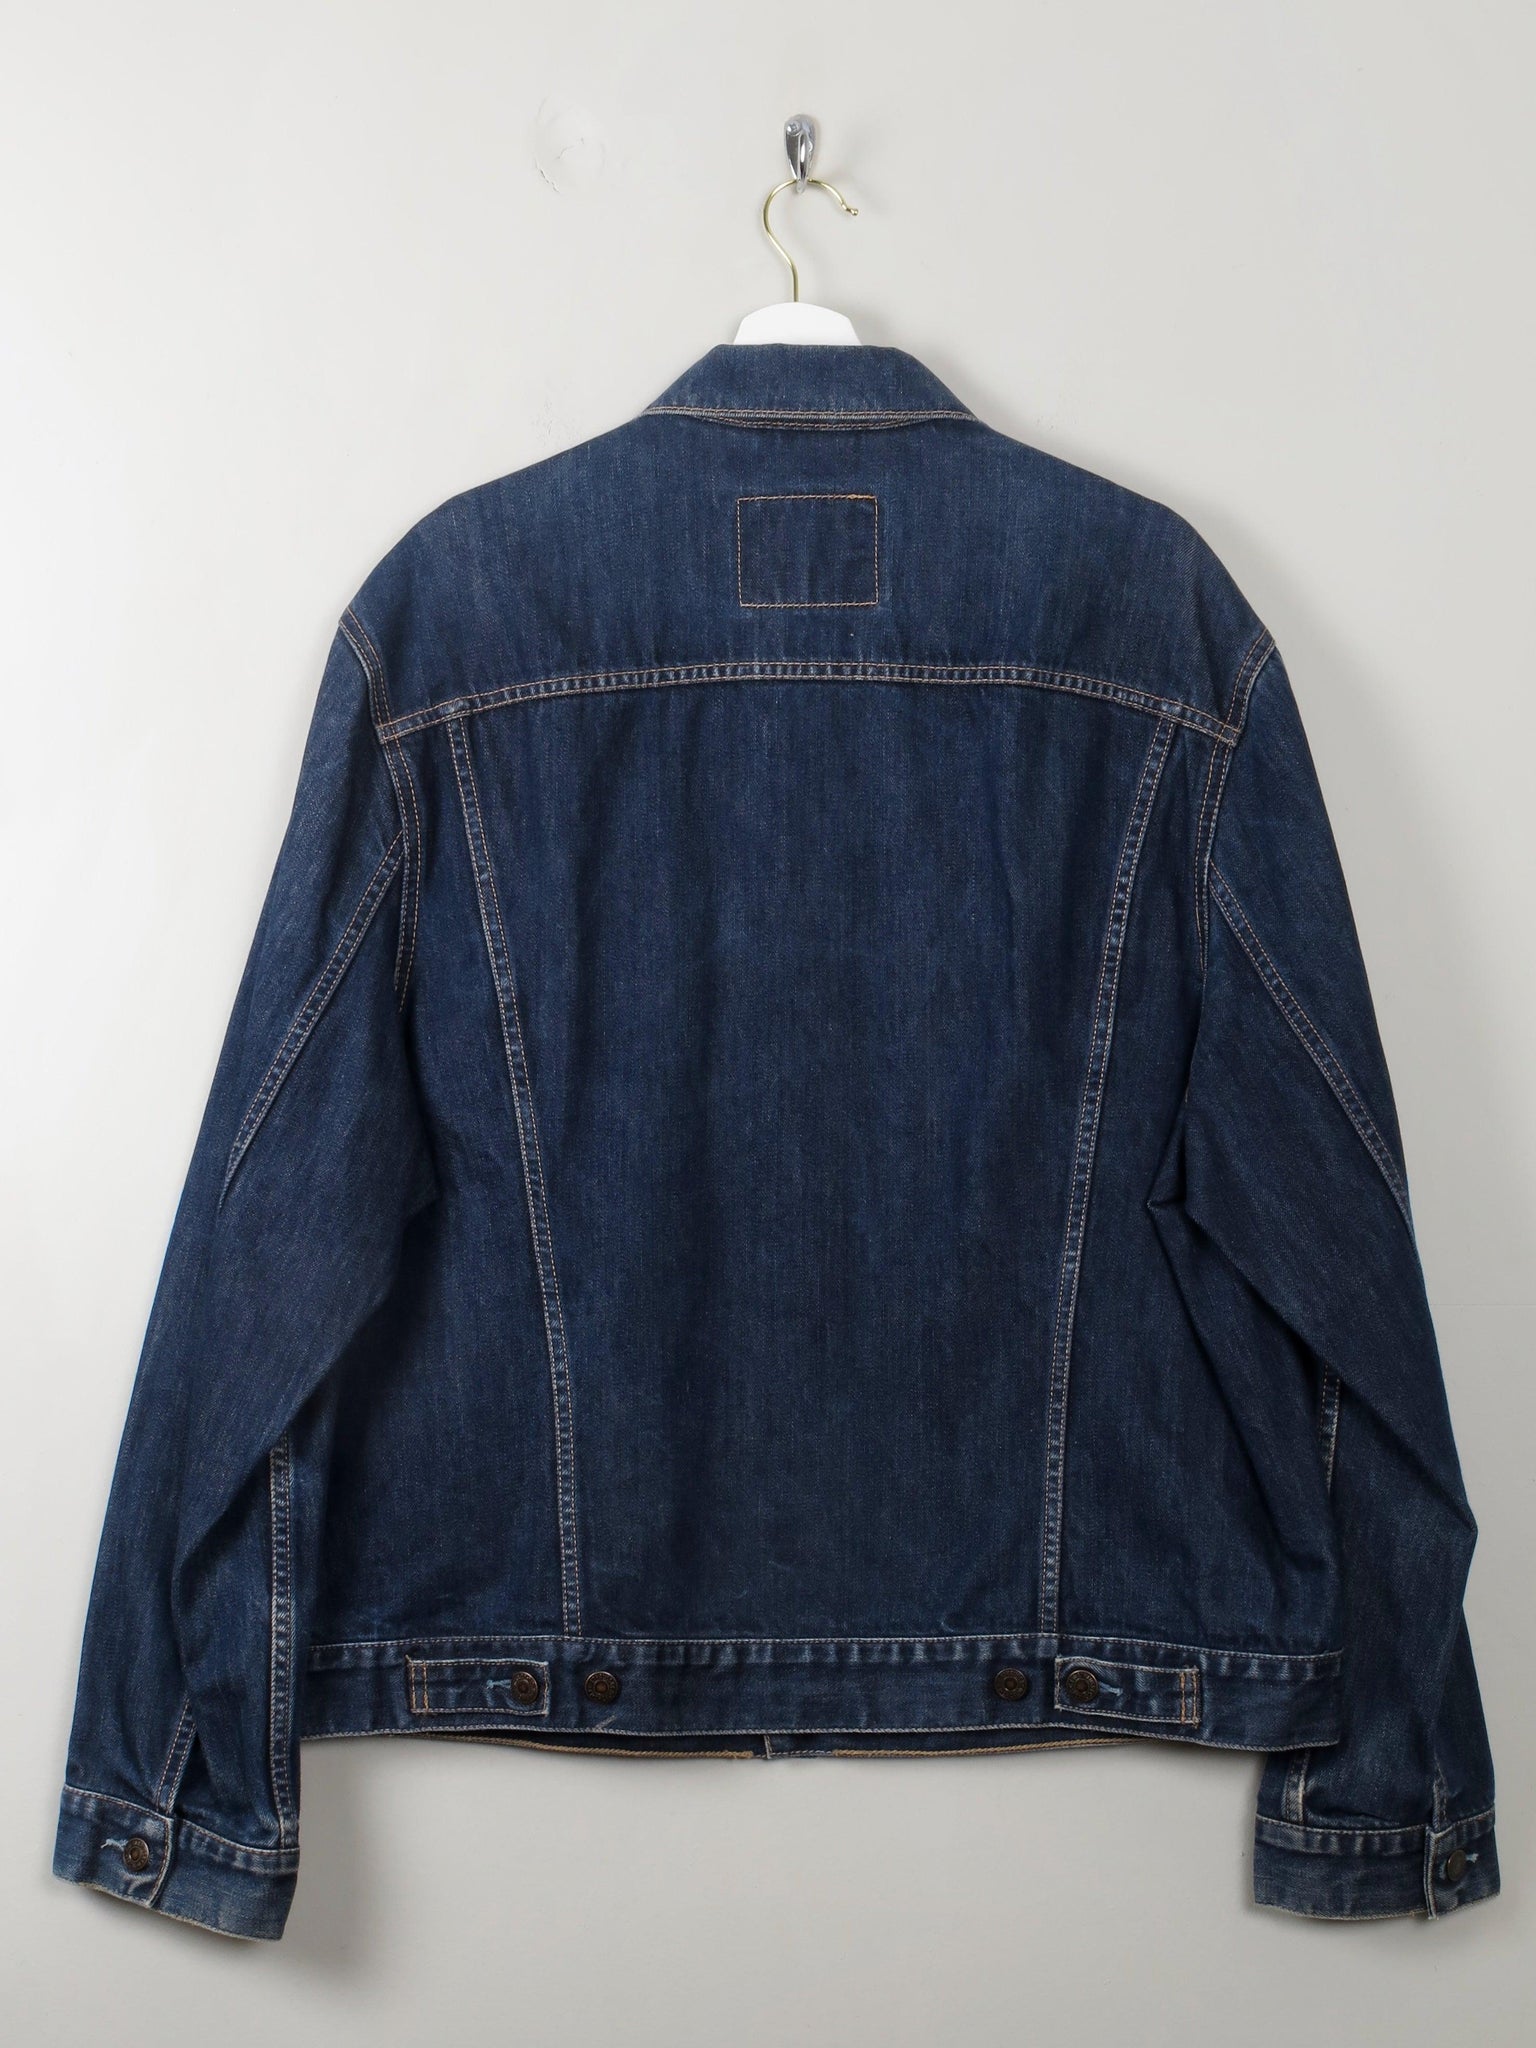 Men's Vintage Levi's Denim Jacket XL - The Harlequin